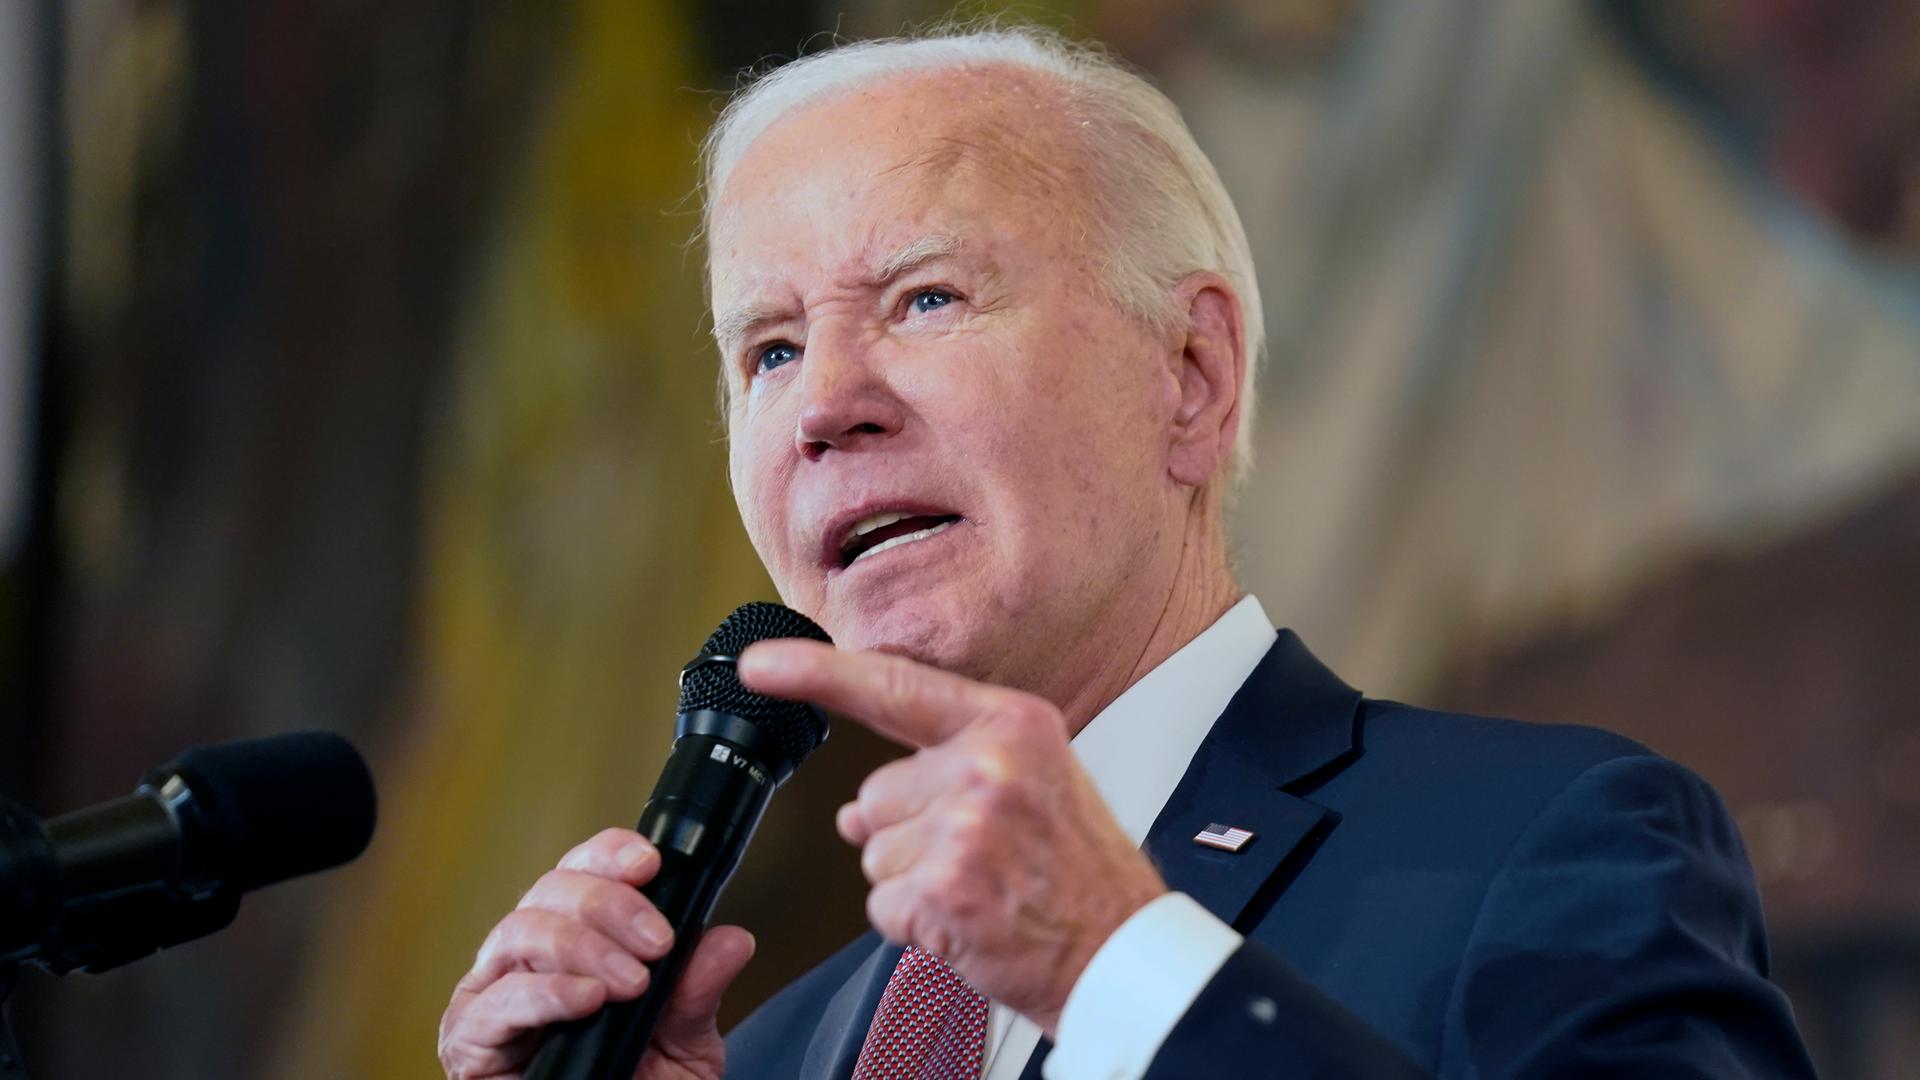 Biden spricht vor einem bräunlichen Hintergrund in ein Mikrofon und zeigt dabei mit der linken Zeigefinger nach vorne.